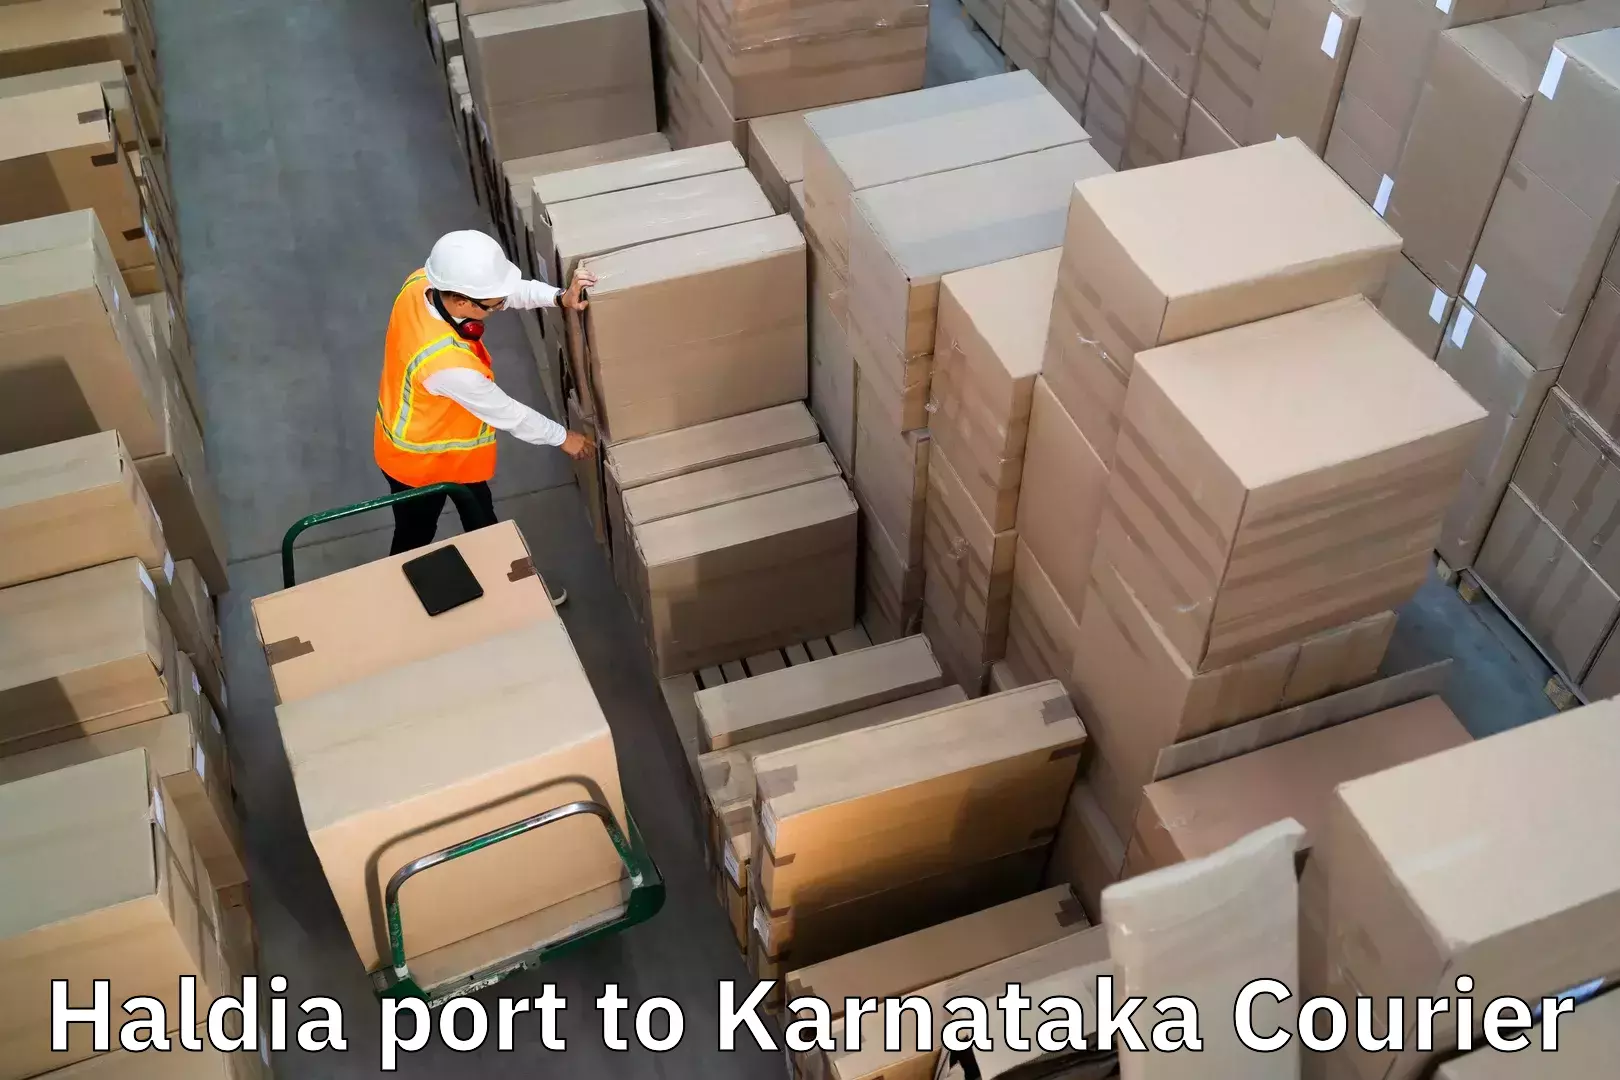 Scheduled baggage courier Haldia port to Toranagallu